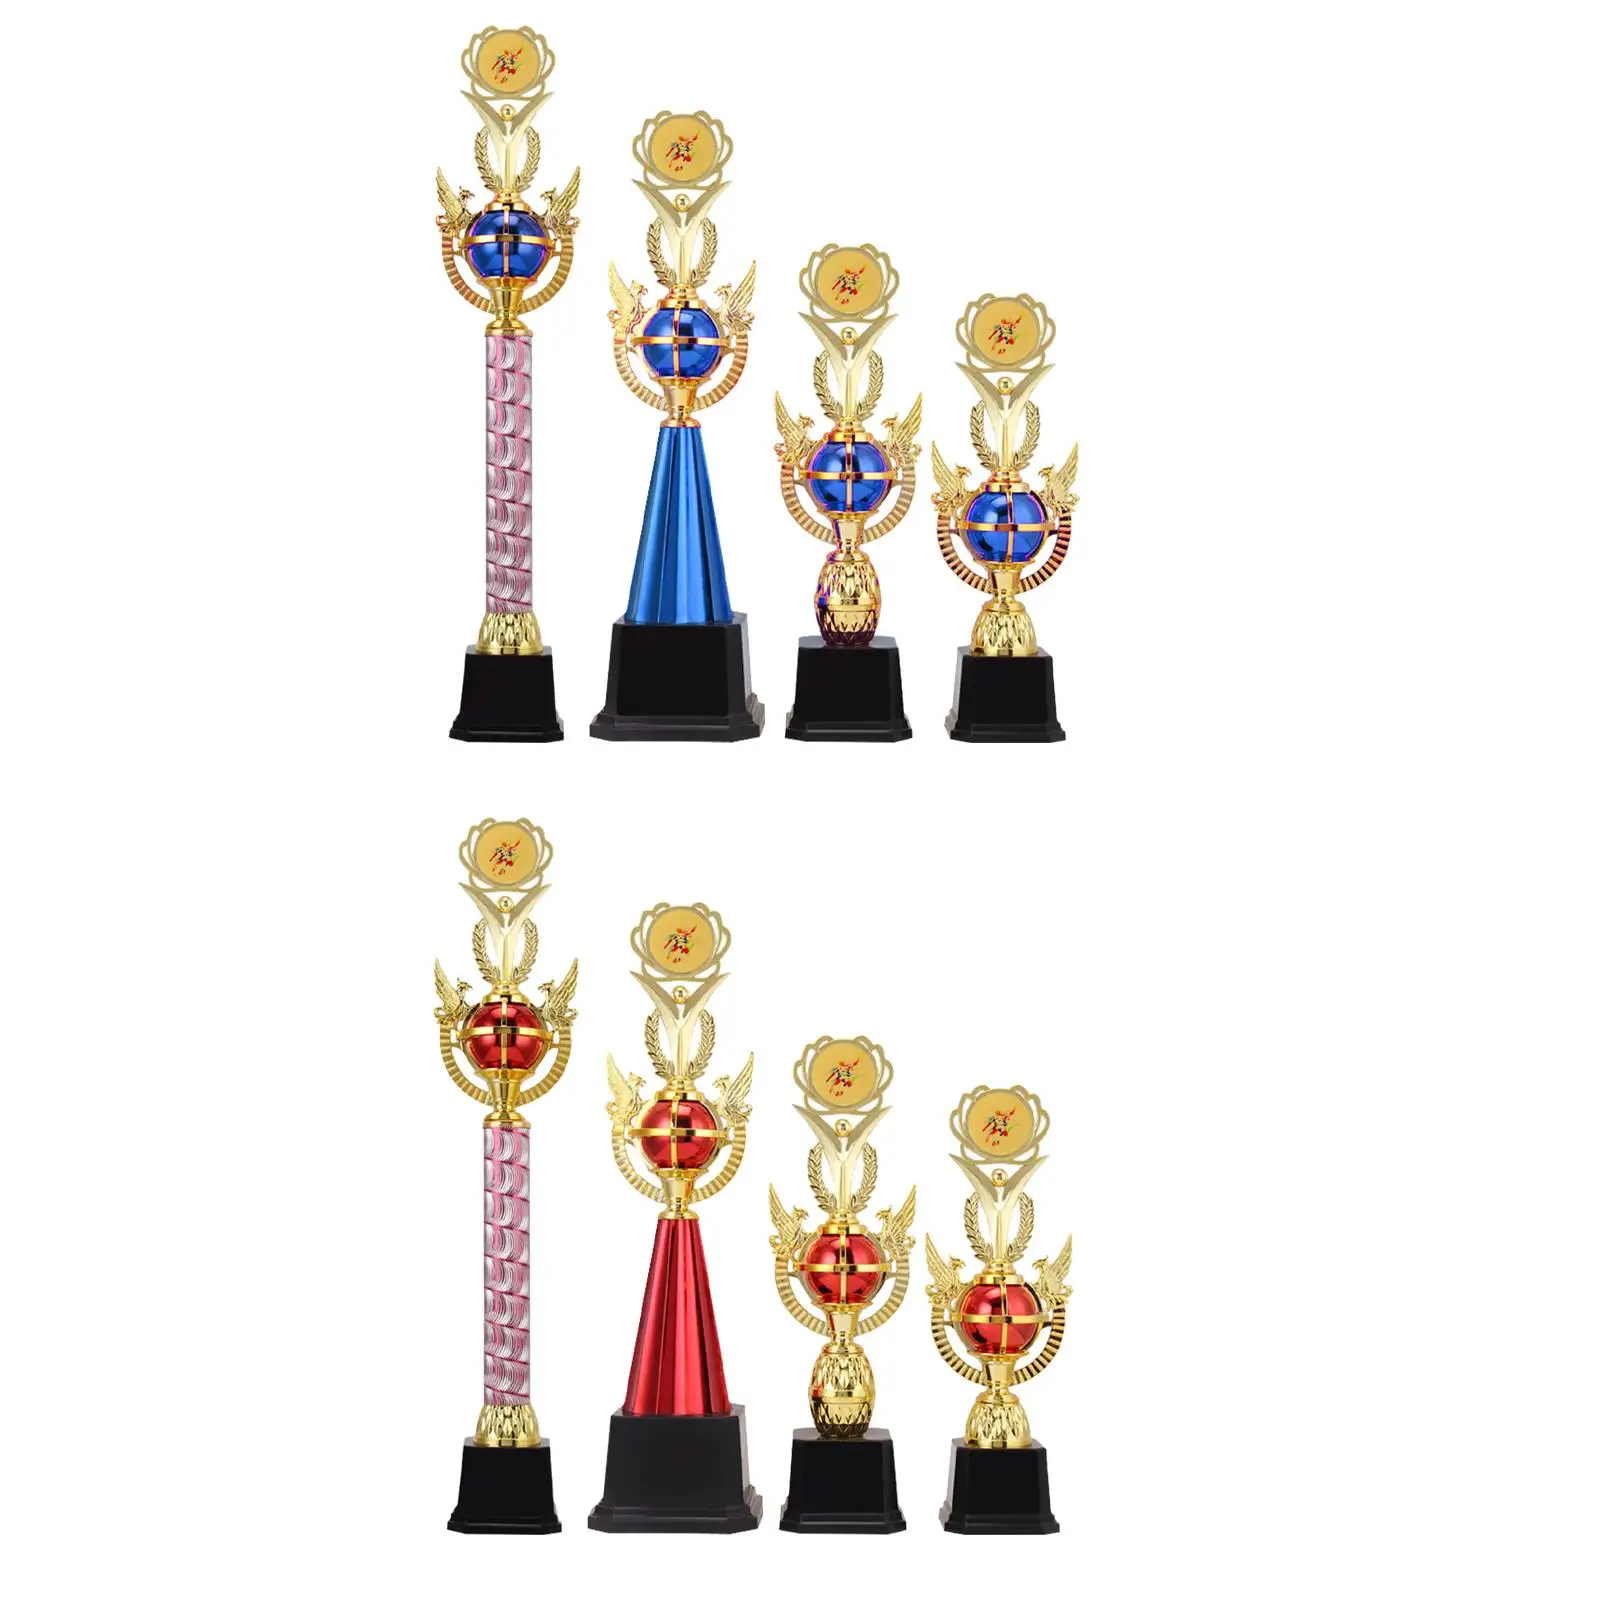 Награда Трофей Кубок Деликатный Приз Победителя для классных корпоративных мероприятий, вечеринок, спортивных турниров Церемония награждения